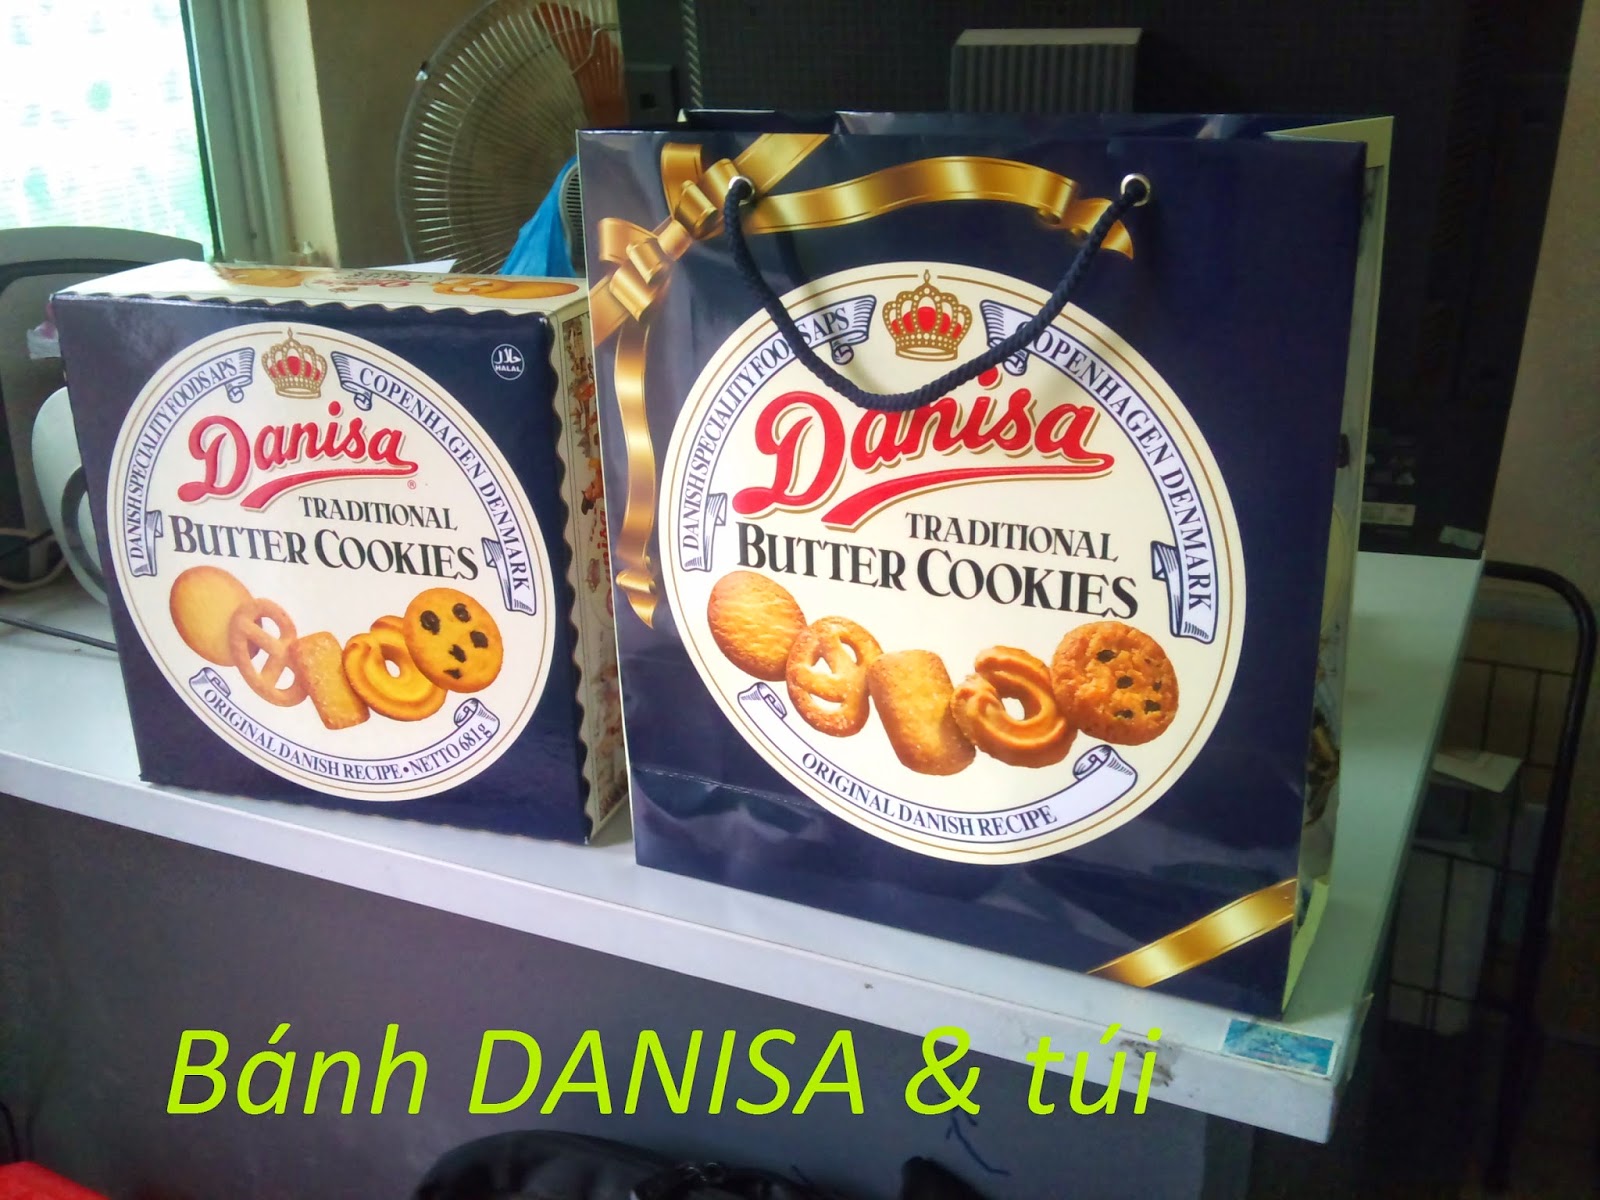 Bao bì thương hiệu bánh Danisa